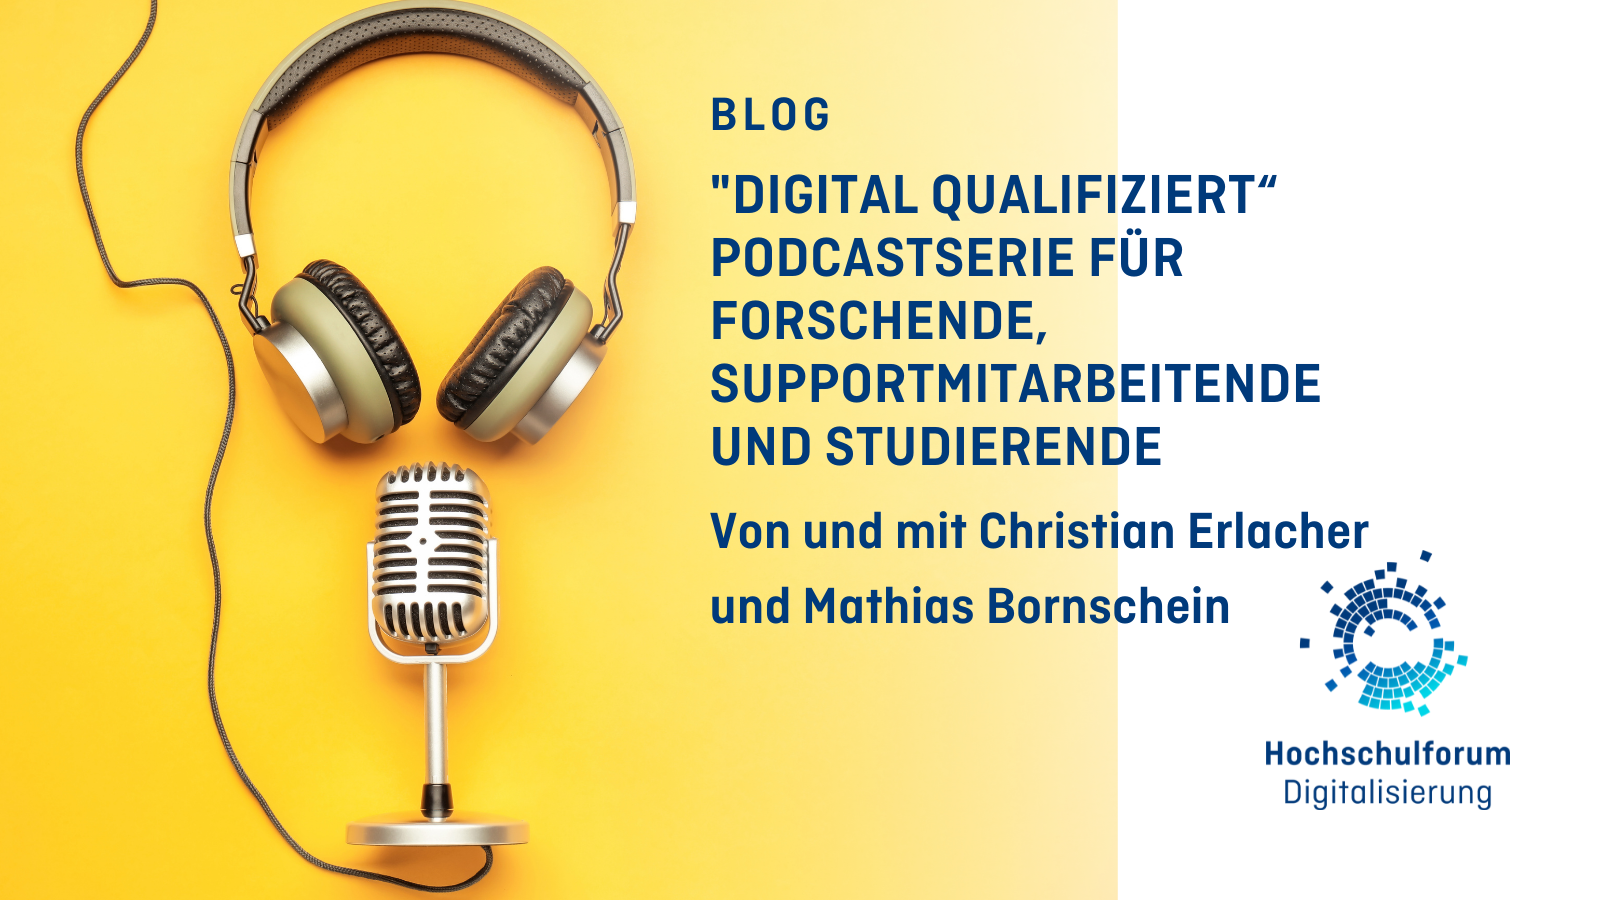 Bild linke Seite: Foto eines Mikrofons und Kopfhörern auf gelbem Hintergund. Text rechts: "Digital Qualifiziert" - Podcastserie für Forschende, Supportmitarbeitende und Studierende.